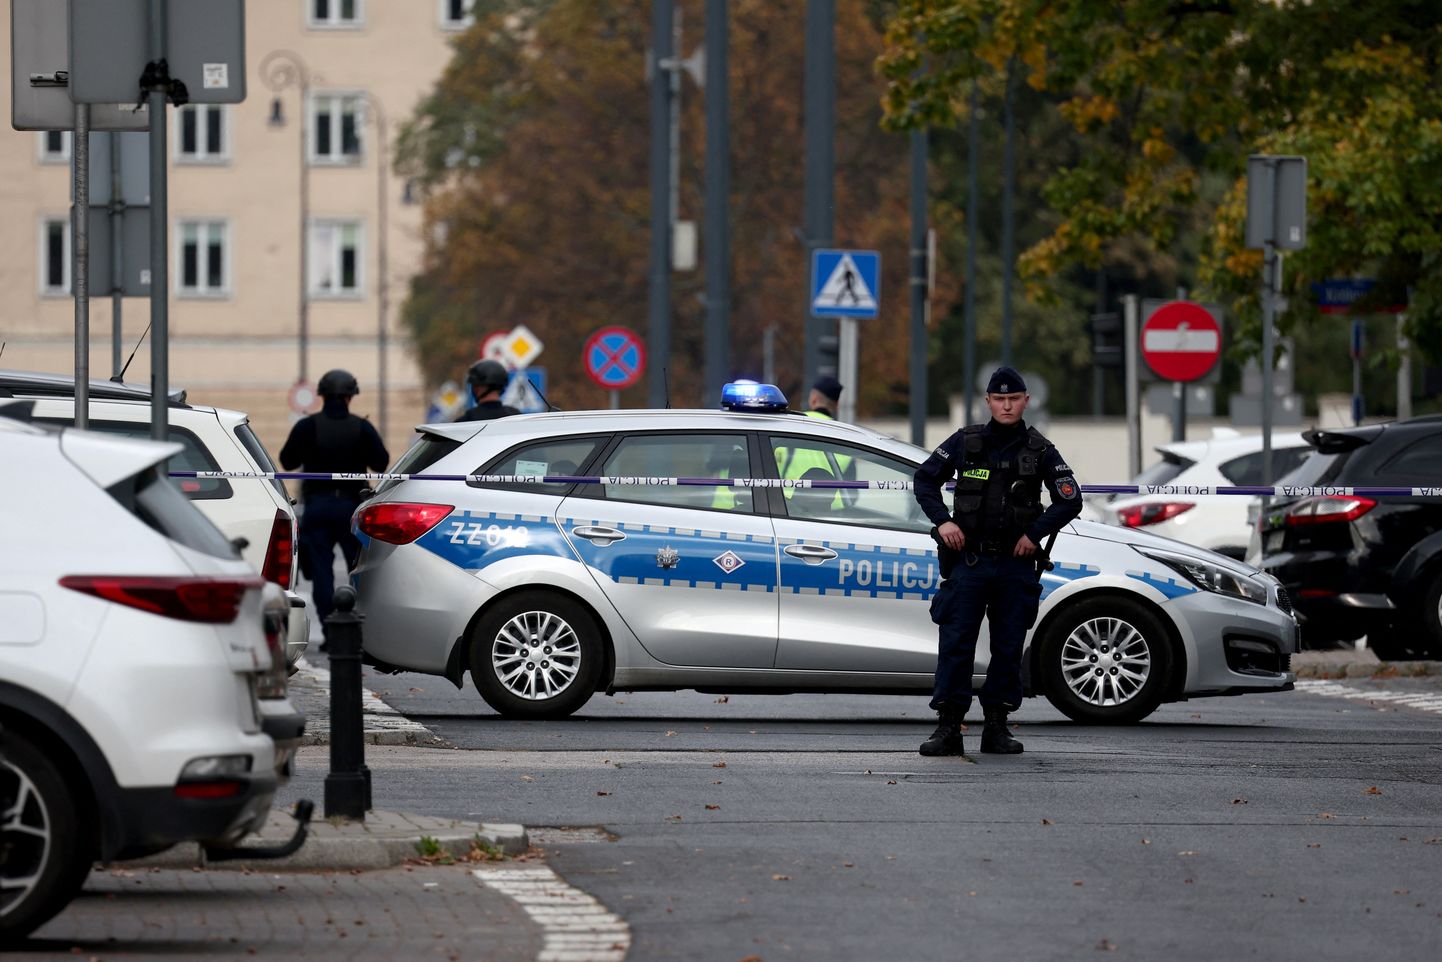 Poola politsei tänase pommiähvarduse sündmuskohta piiramas.